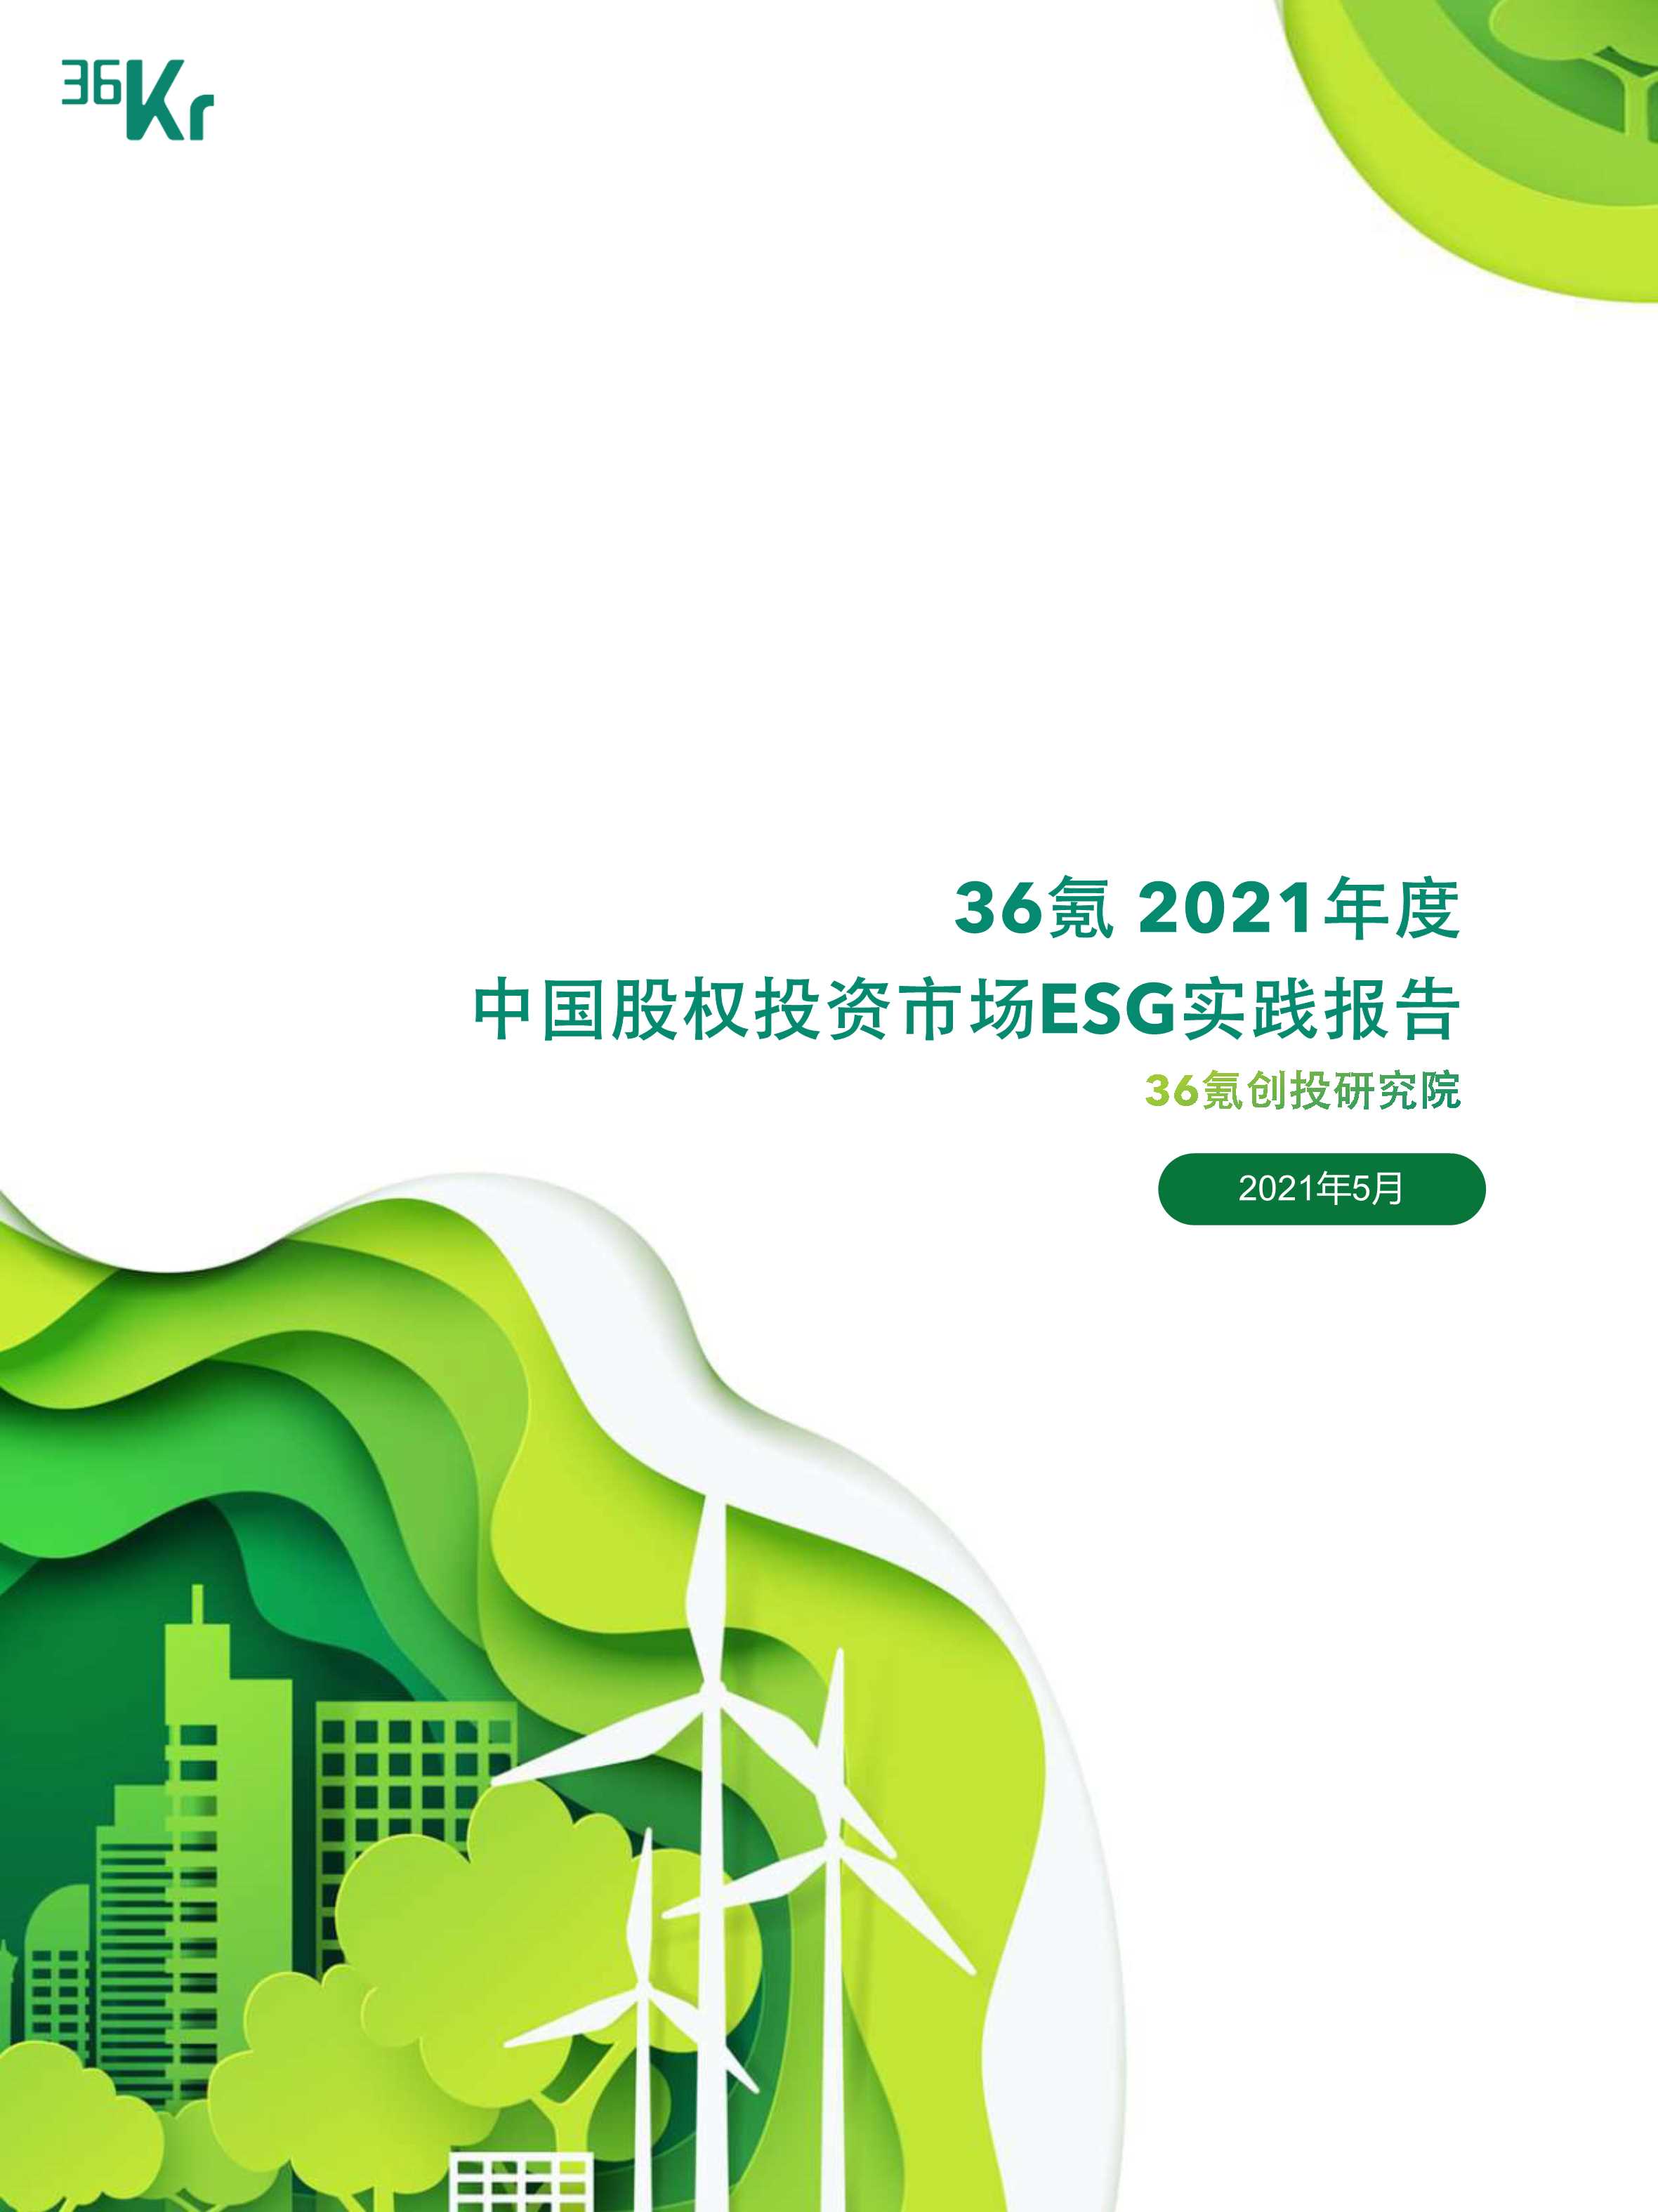 36氪-2021年度中国股权投资市场ESG实践报告-2021.05-29页